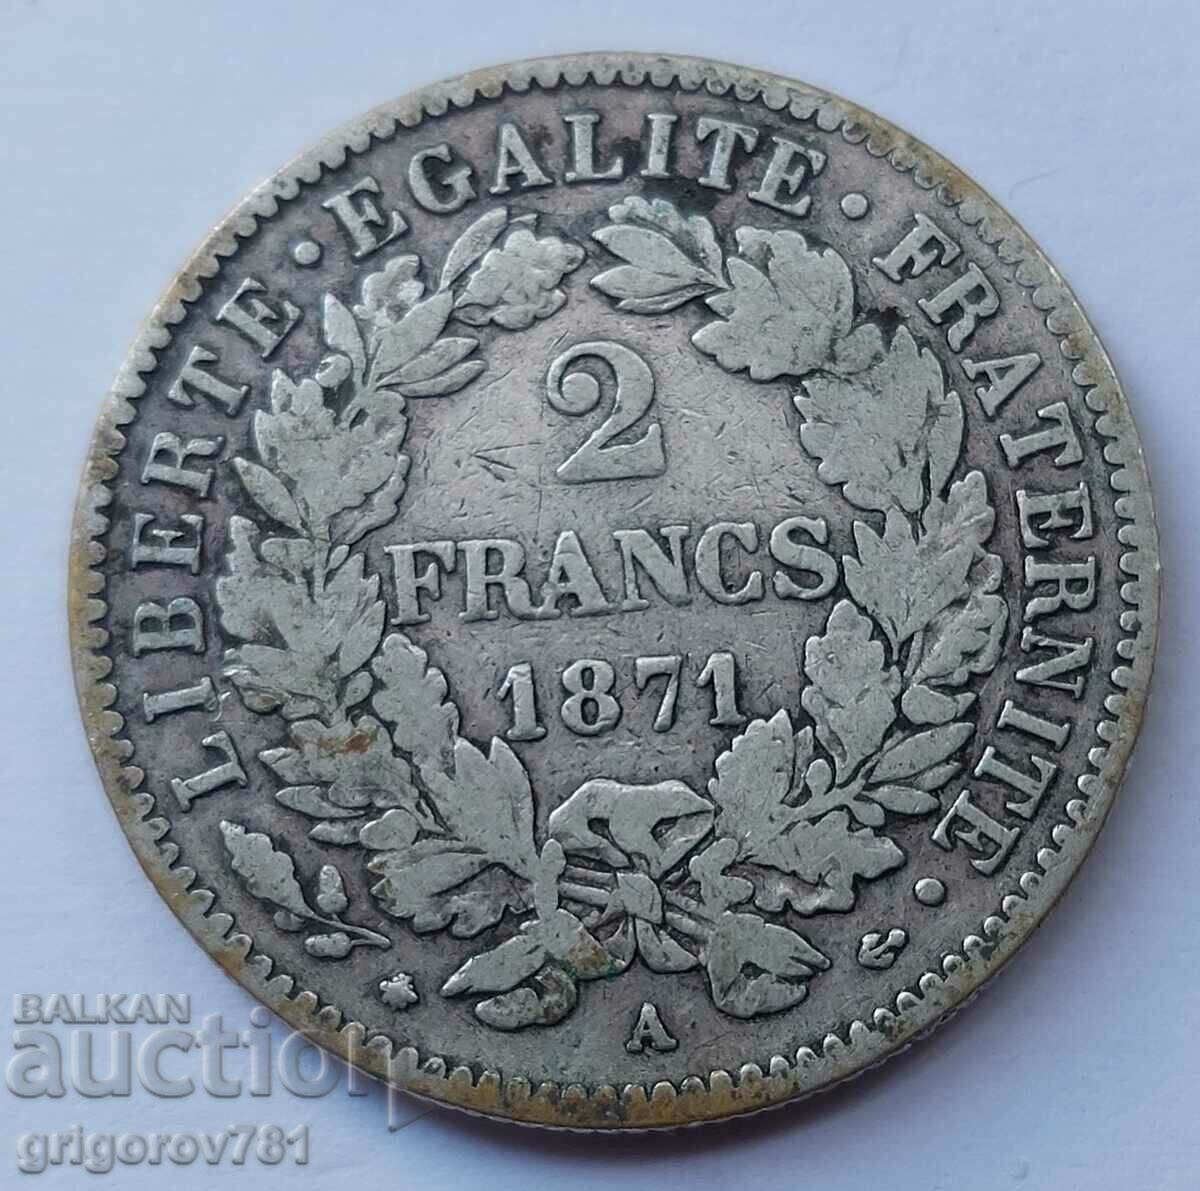 Ασημένιο 2 φράγκα Γαλλία 1871 Α - ασημένιο νόμισμα №31